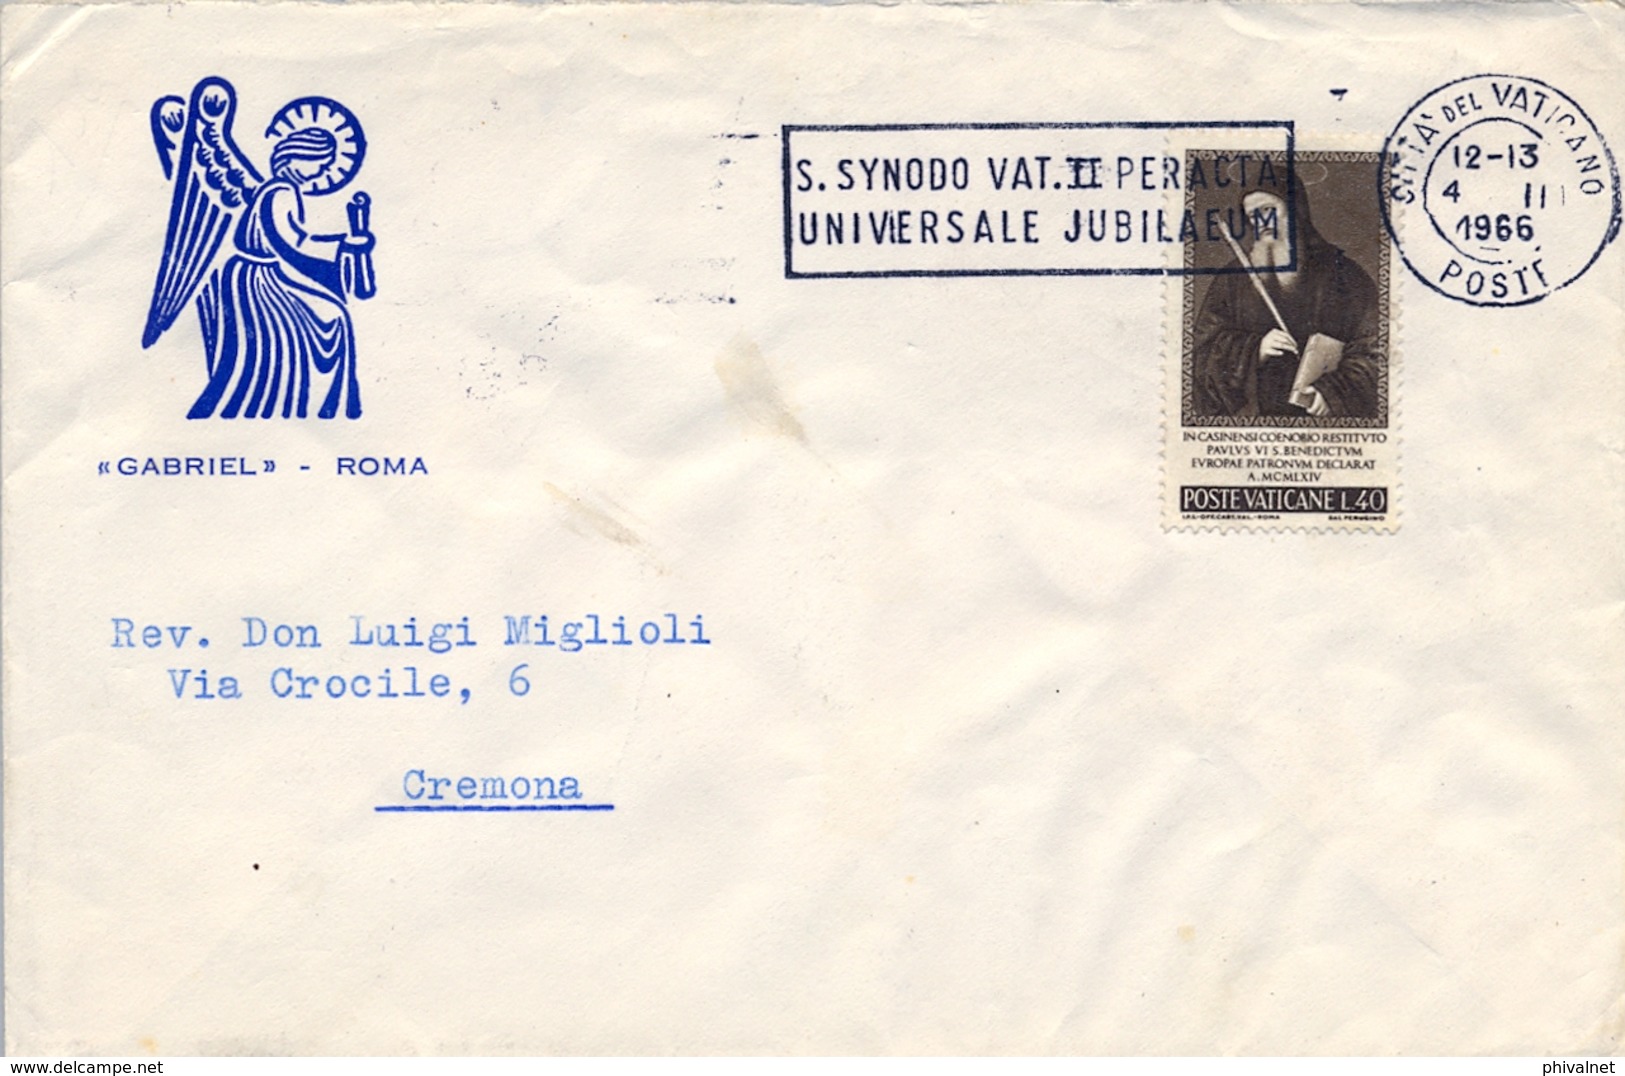 1966 , VATICANO , SOBRE CIRCULADO A CREMONA , JUBILEO UNIVERSAL , SINODO VATICANO II - Briefe U. Dokumente